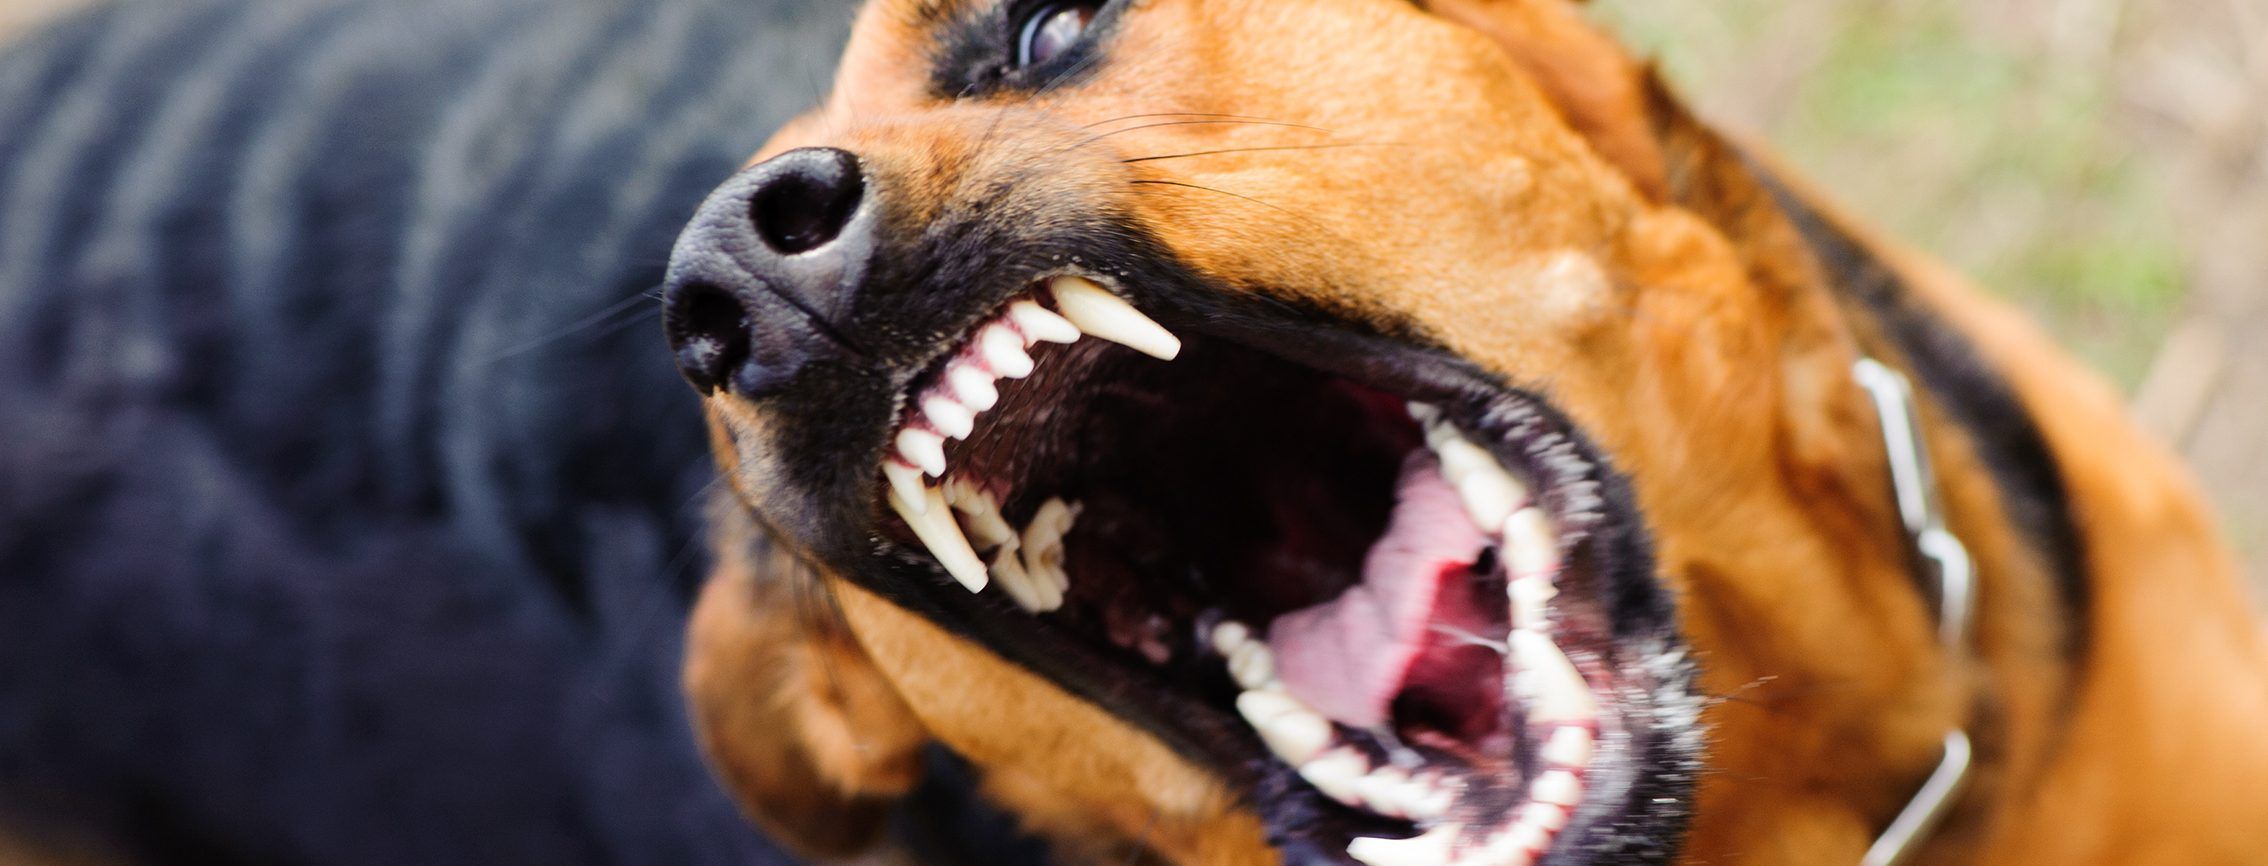 В селе на Житомирщине объявили 60-дневный карантин из-за бешенства у собаки